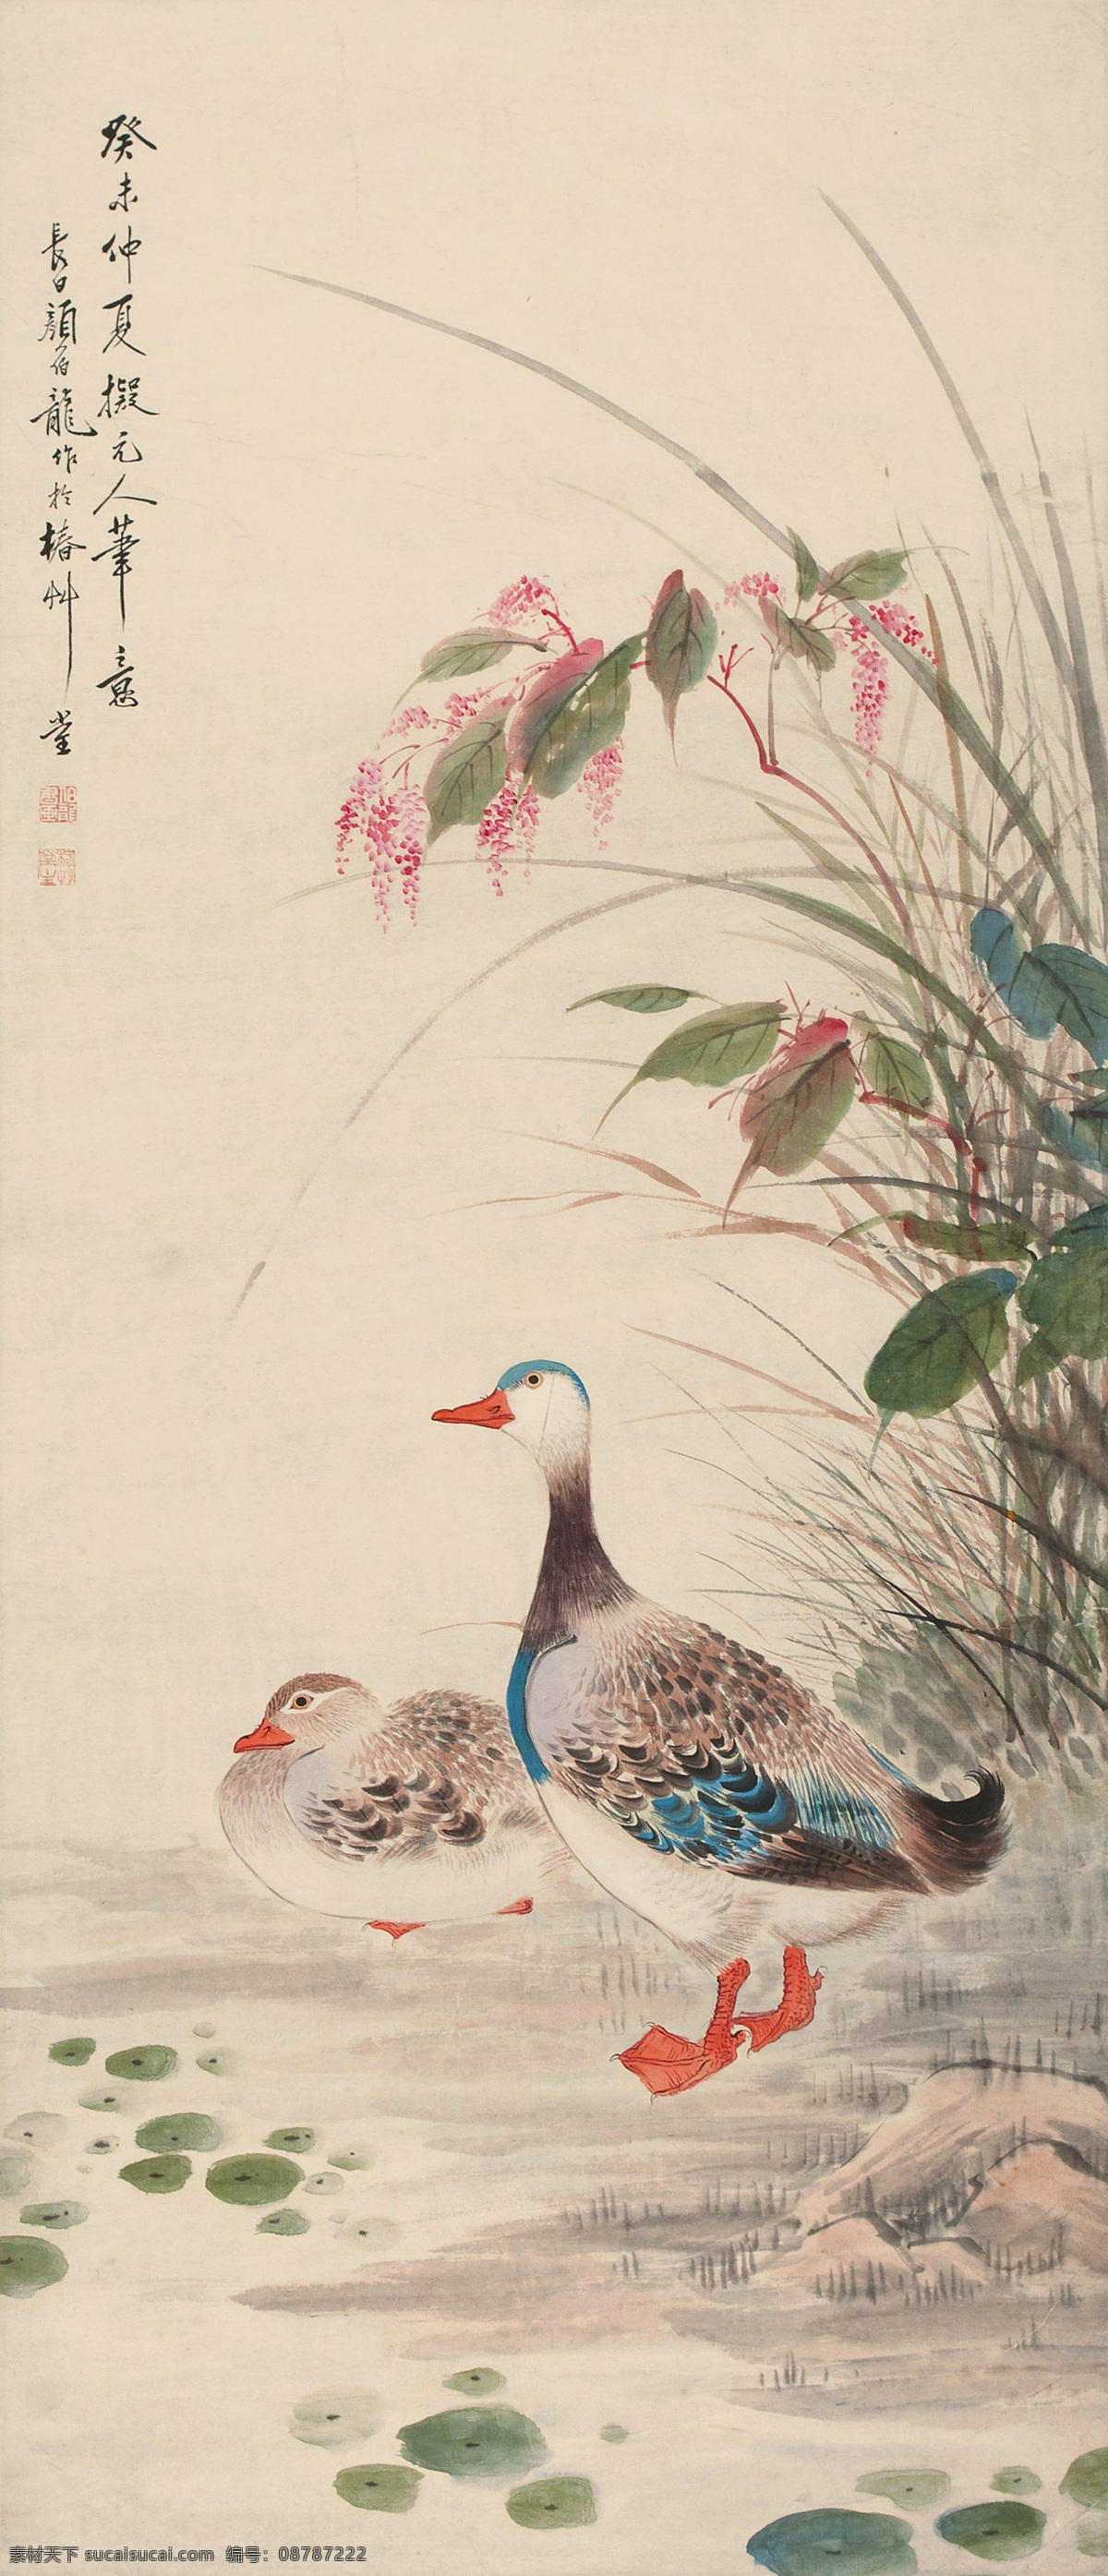 鸭子 芦苇 国画 工笔画 中国风 绘画 装饰画 水墨 文化艺术 绘画书法